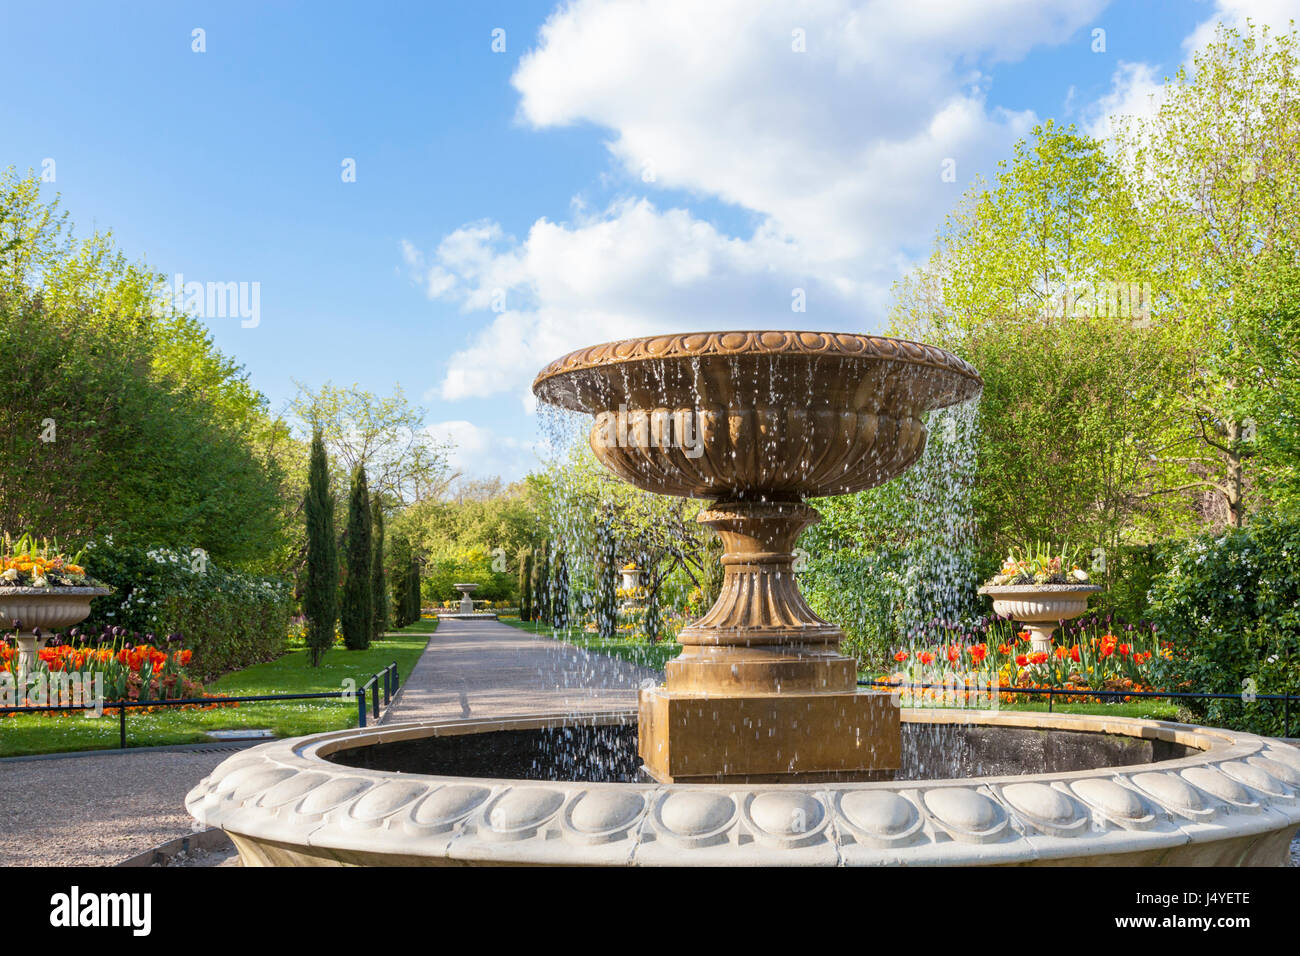 Arbres, fleurs et la fontaine dans l'Avenue Gardens at Regents Park, Londres, l'un des parcs royaux. London, England, UK Banque D'Images